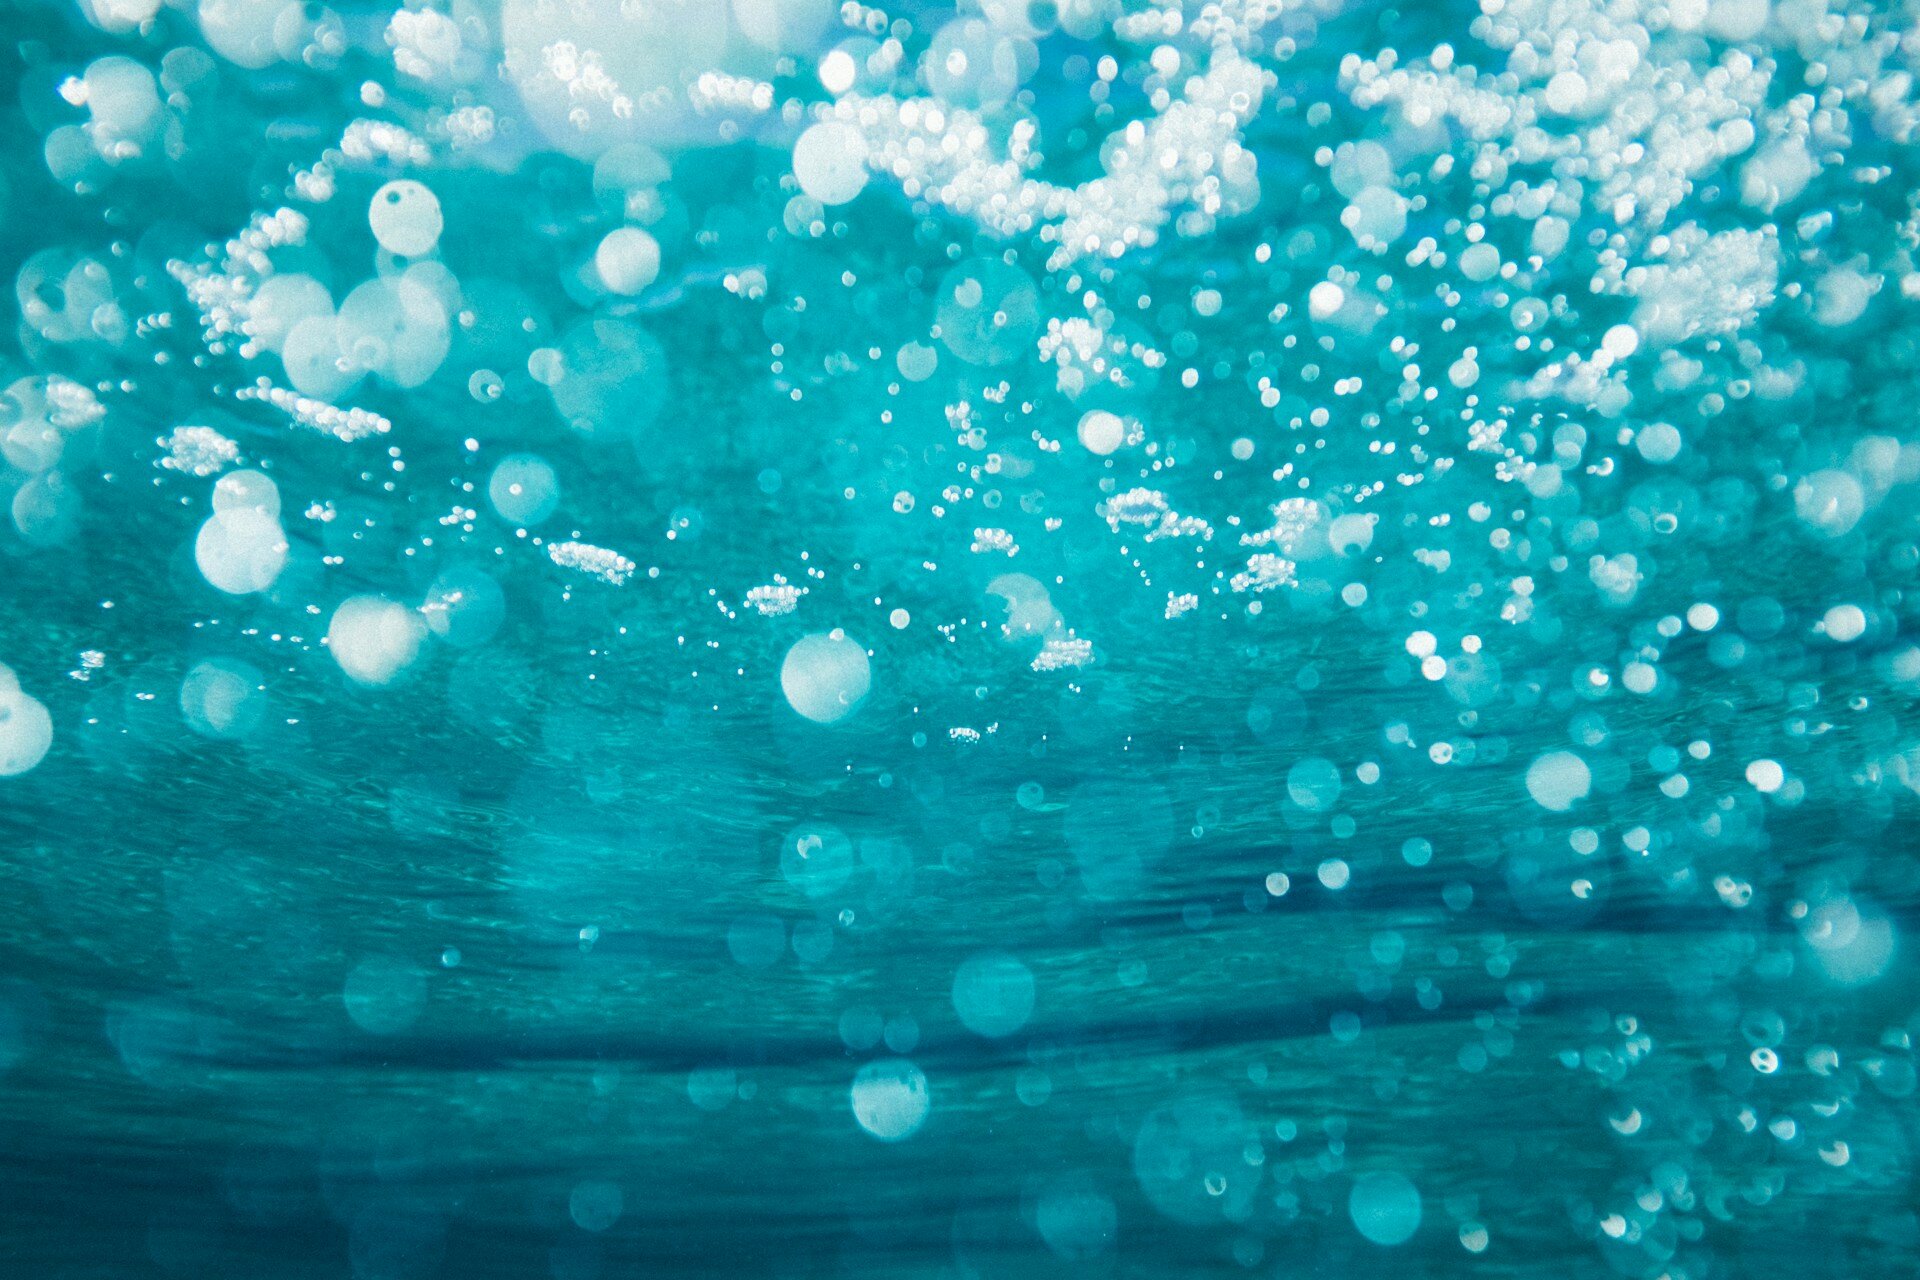 Das Bild zeigt Luftblasen unterhalb der Wasseroberfläche | © Sime Basioli/Unsplash